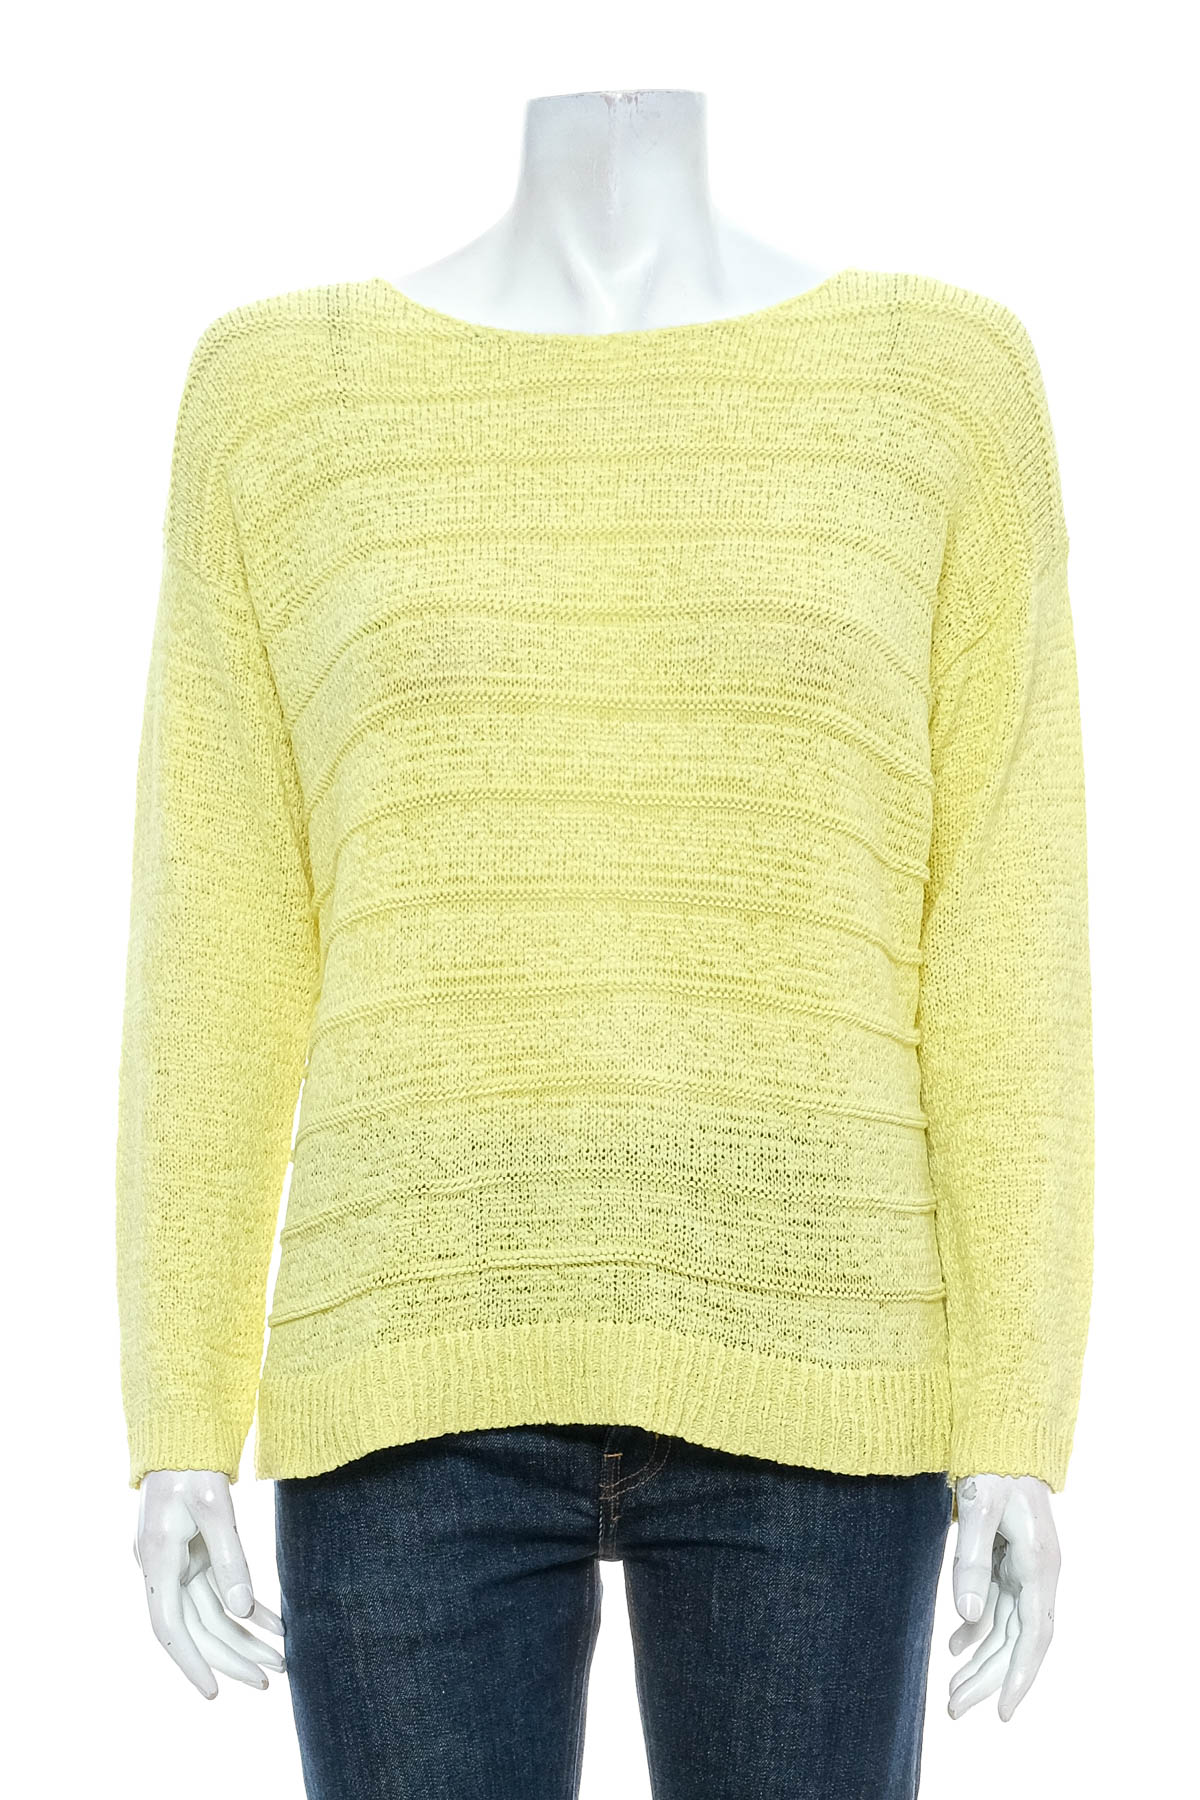 Women's sweater - Suzanne Grae - 0